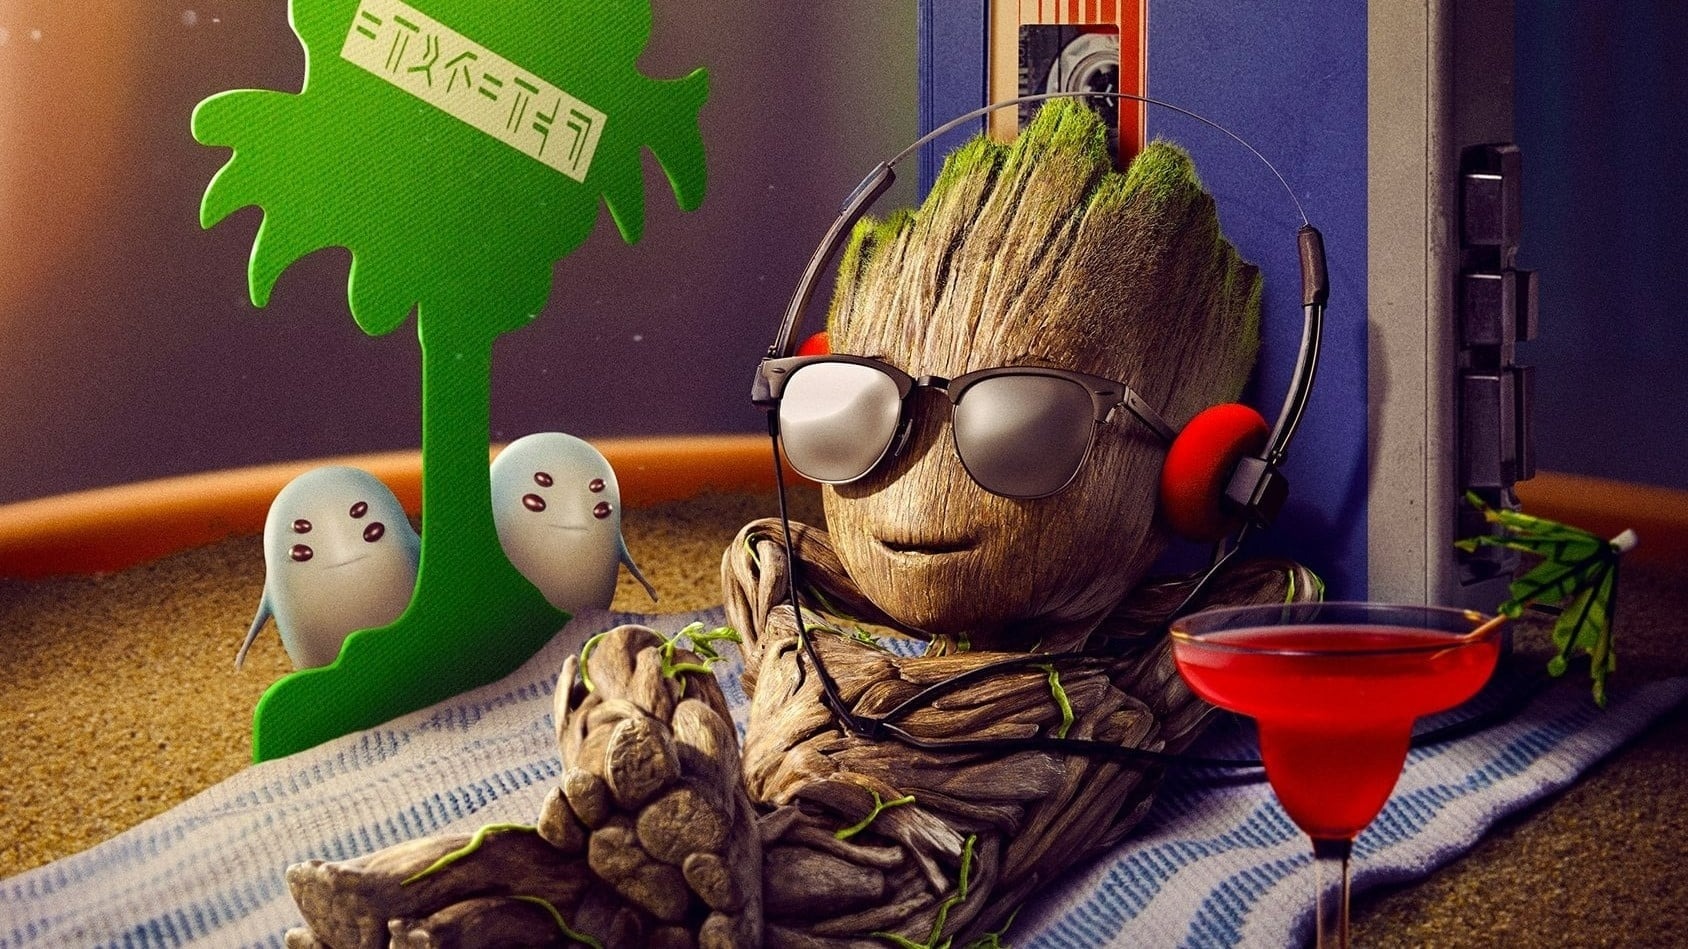 Je s'appelle Groot : une adorable bande-annonce pour la série Disney+